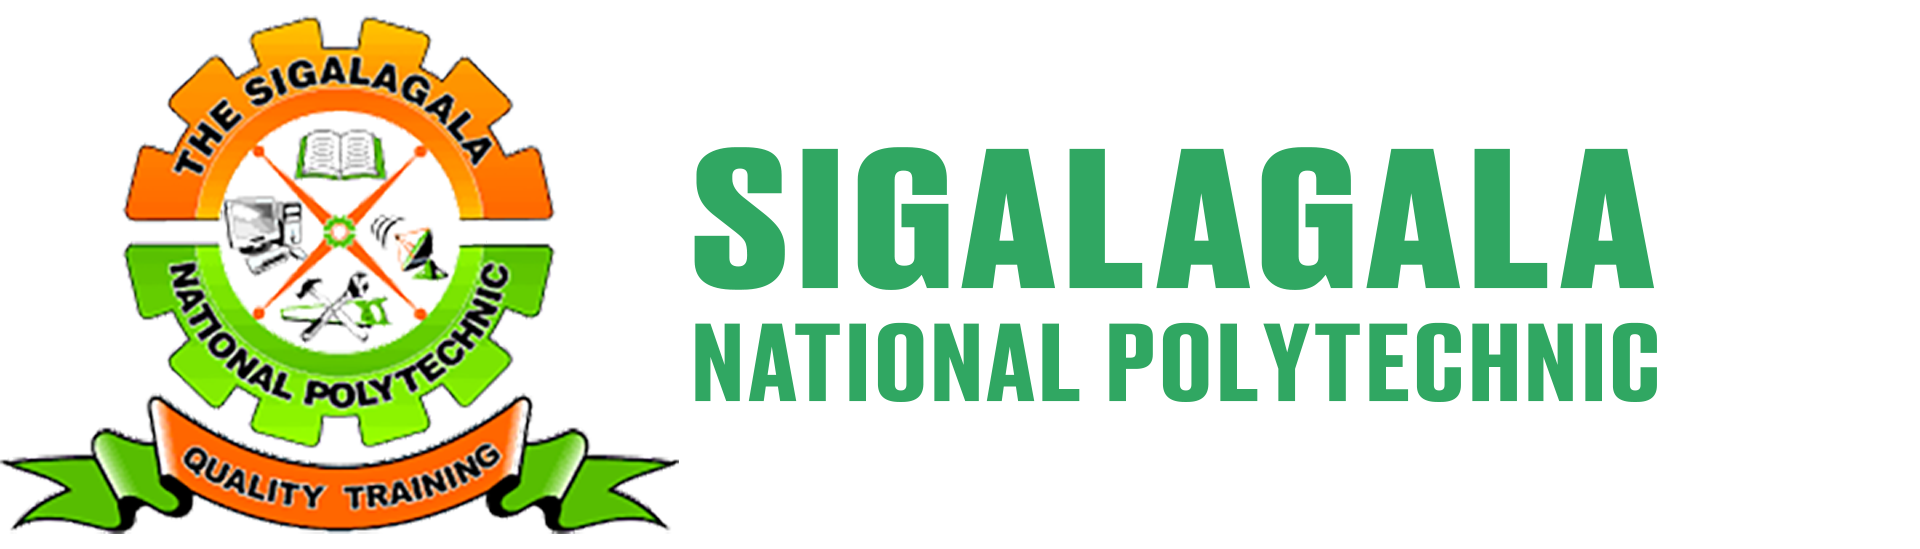 Sigalagala National Polytechnic